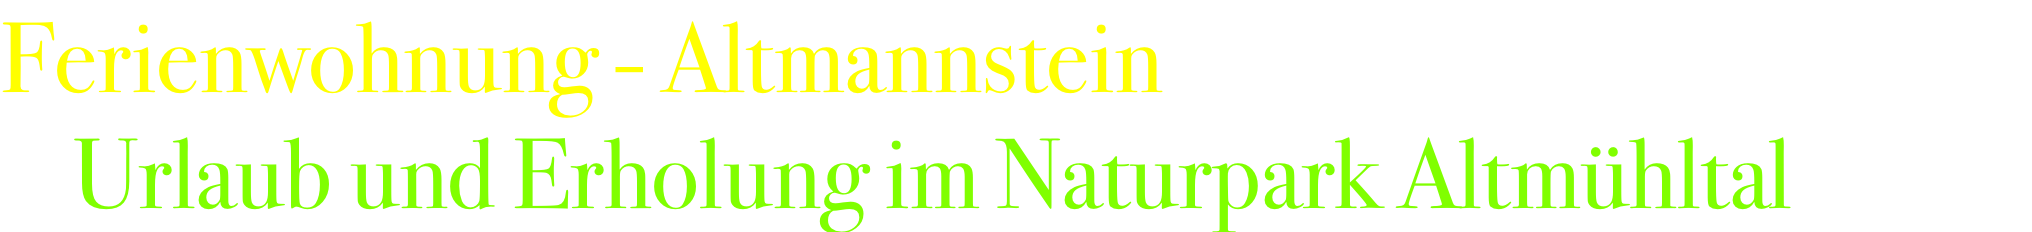 Ferienwohnung - Altmannstein     Urlaub und Erholung im Naturpark Altmühltal